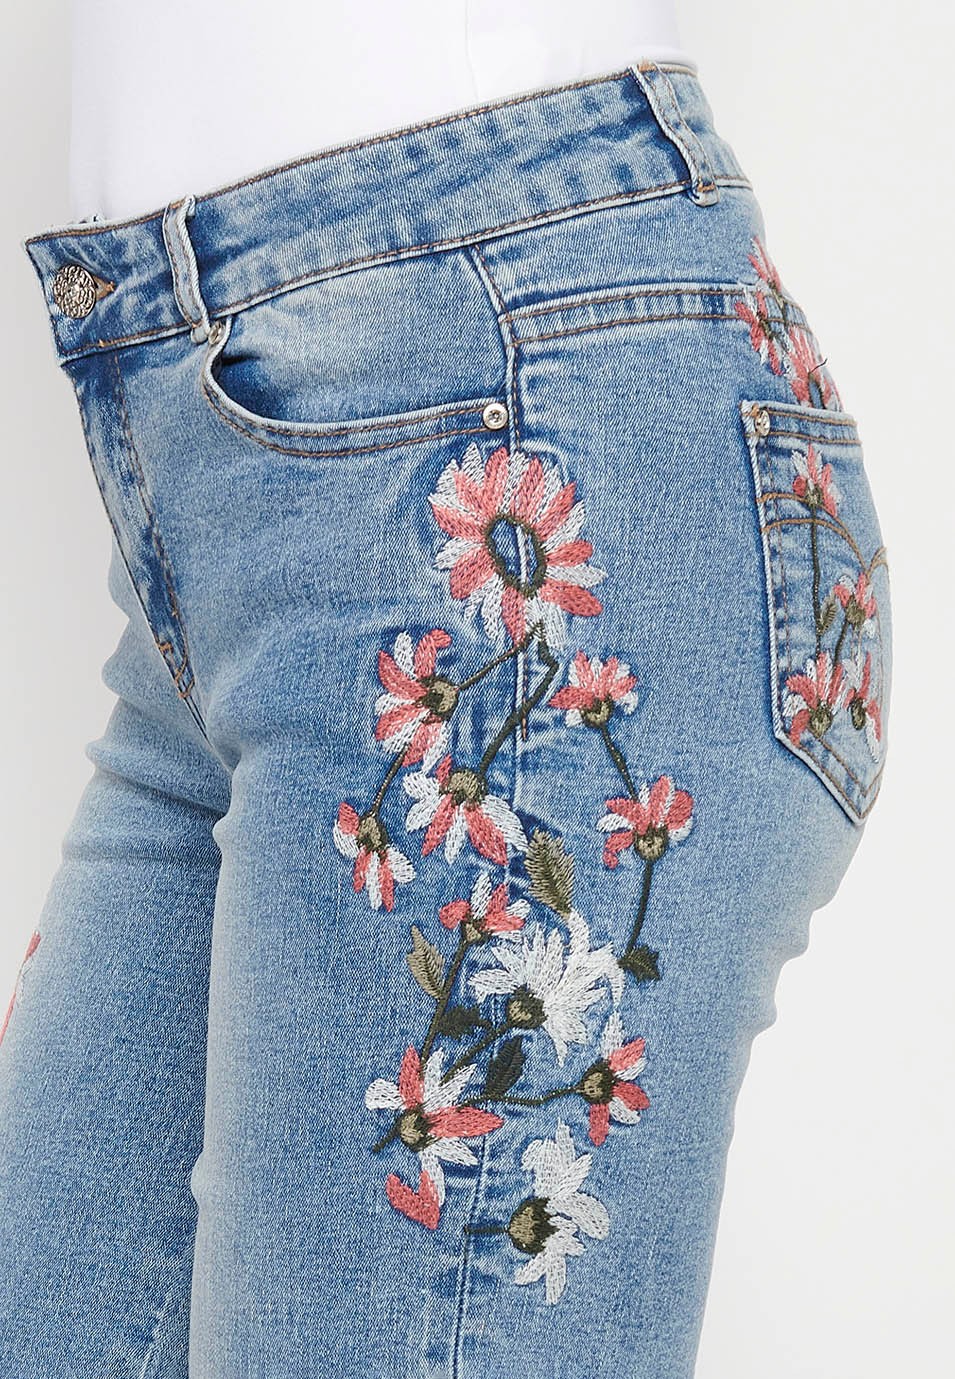 Pantalón corto con bordados florales, color azul para mujer